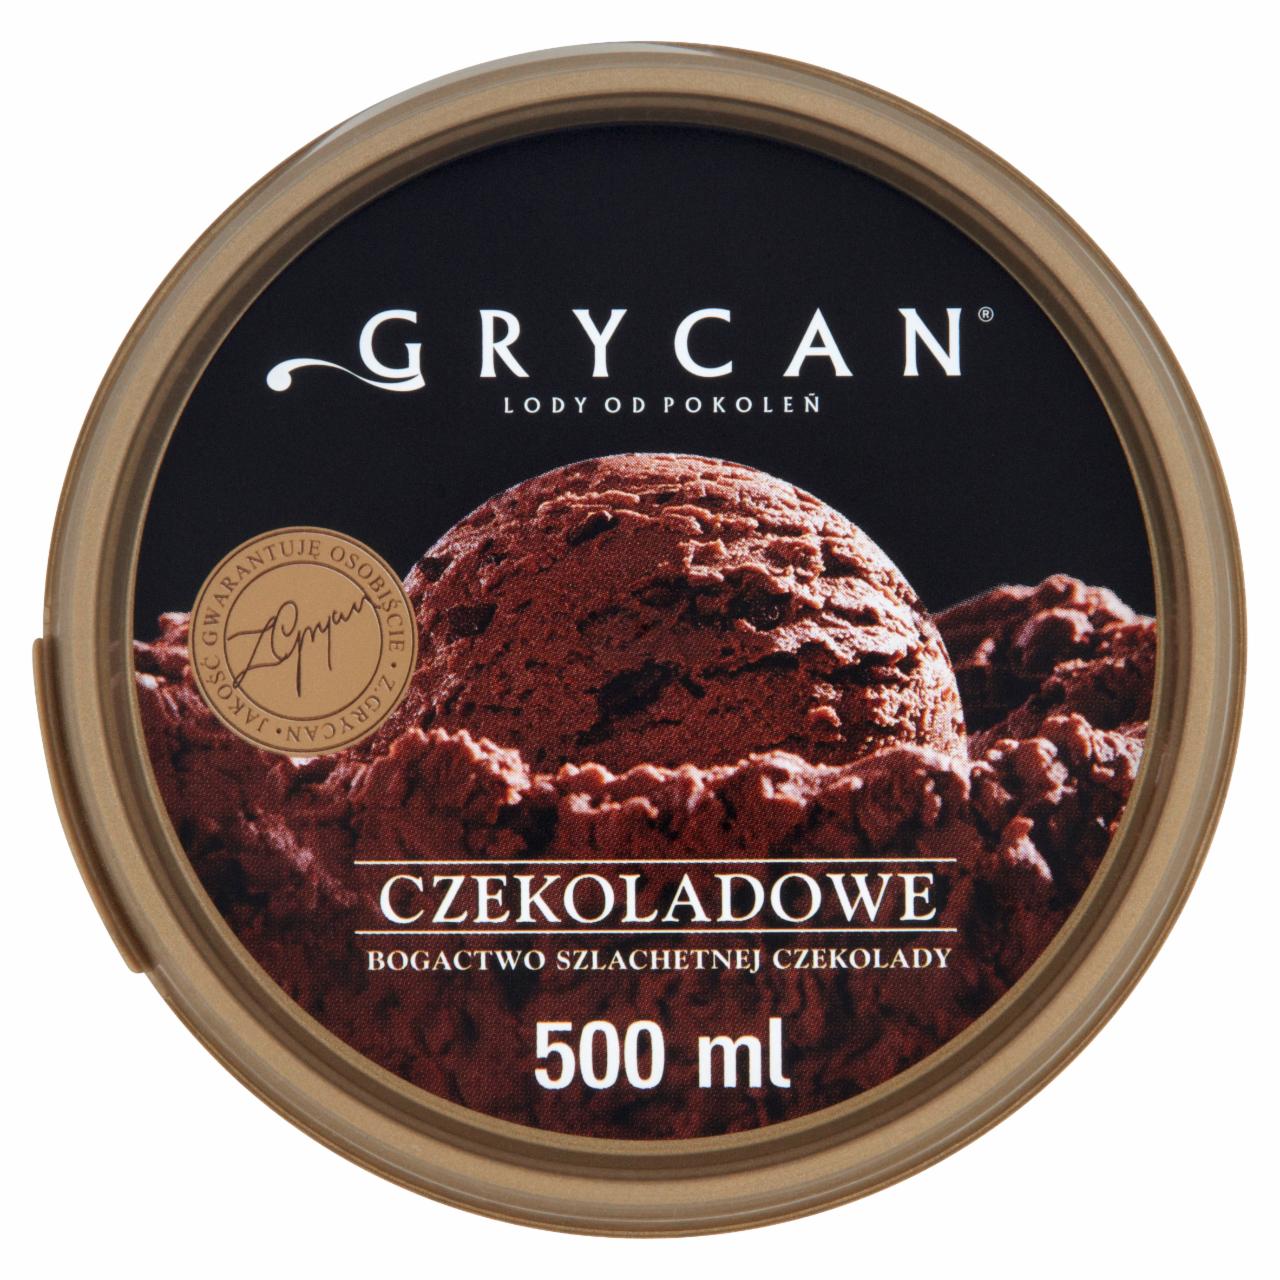 Фото - мороженое со вкусом тирамису Grycan